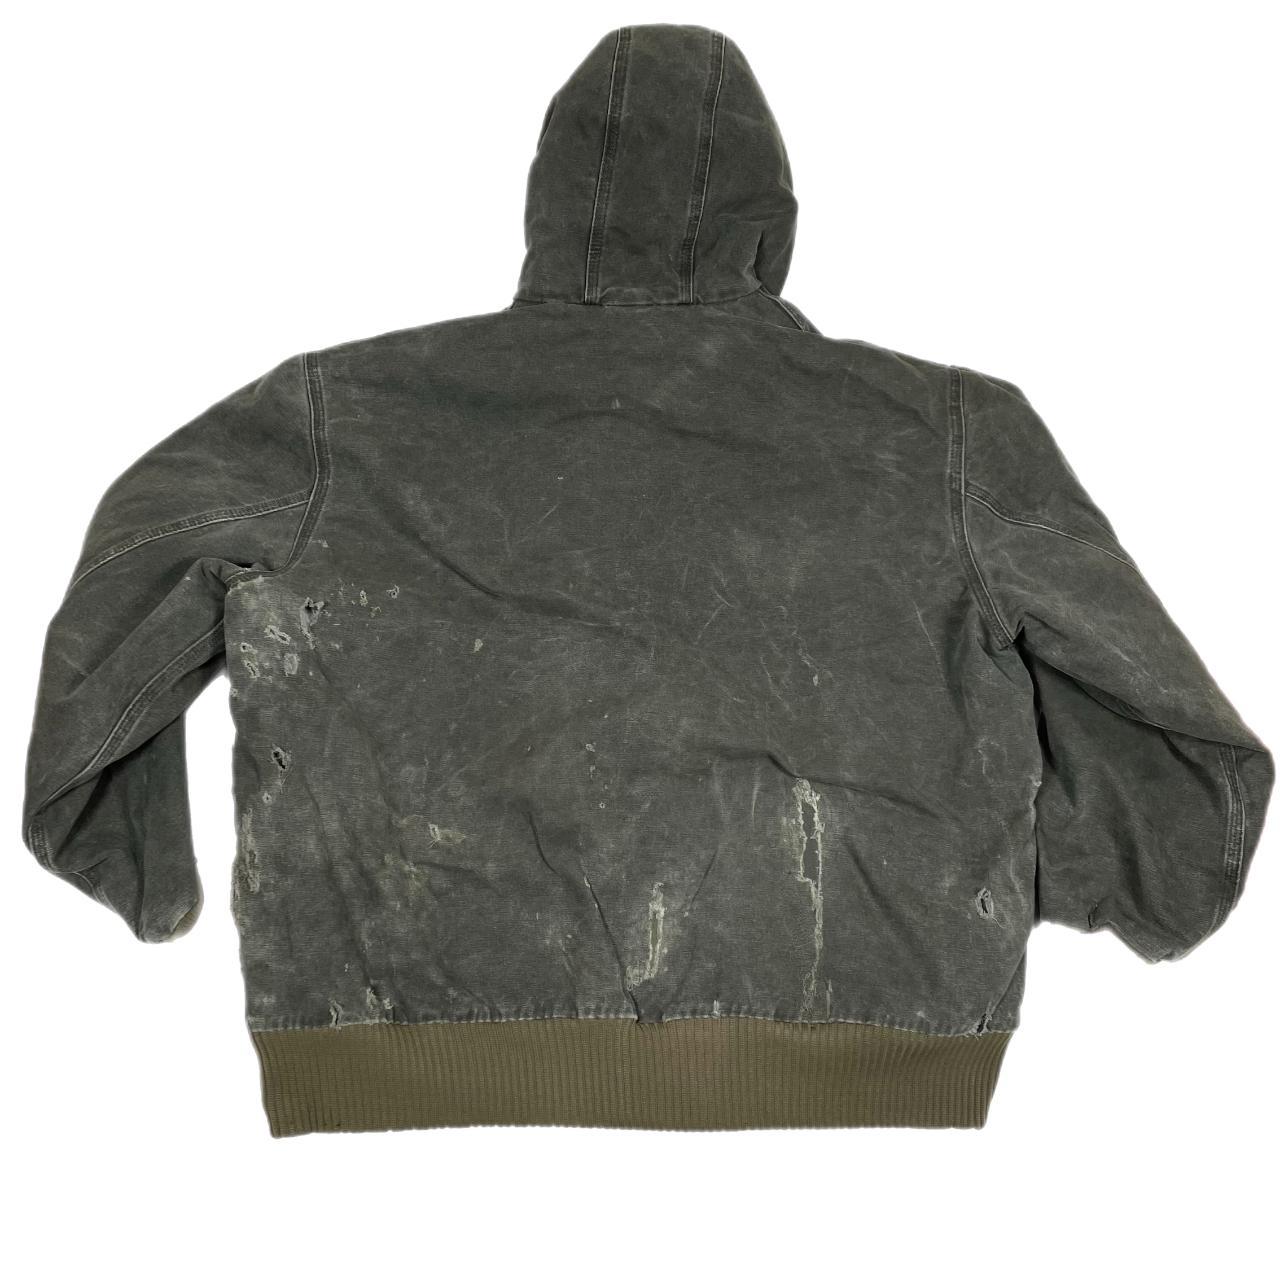 Carhartt J130 moss green work jacket • Size XXL •... - Depop